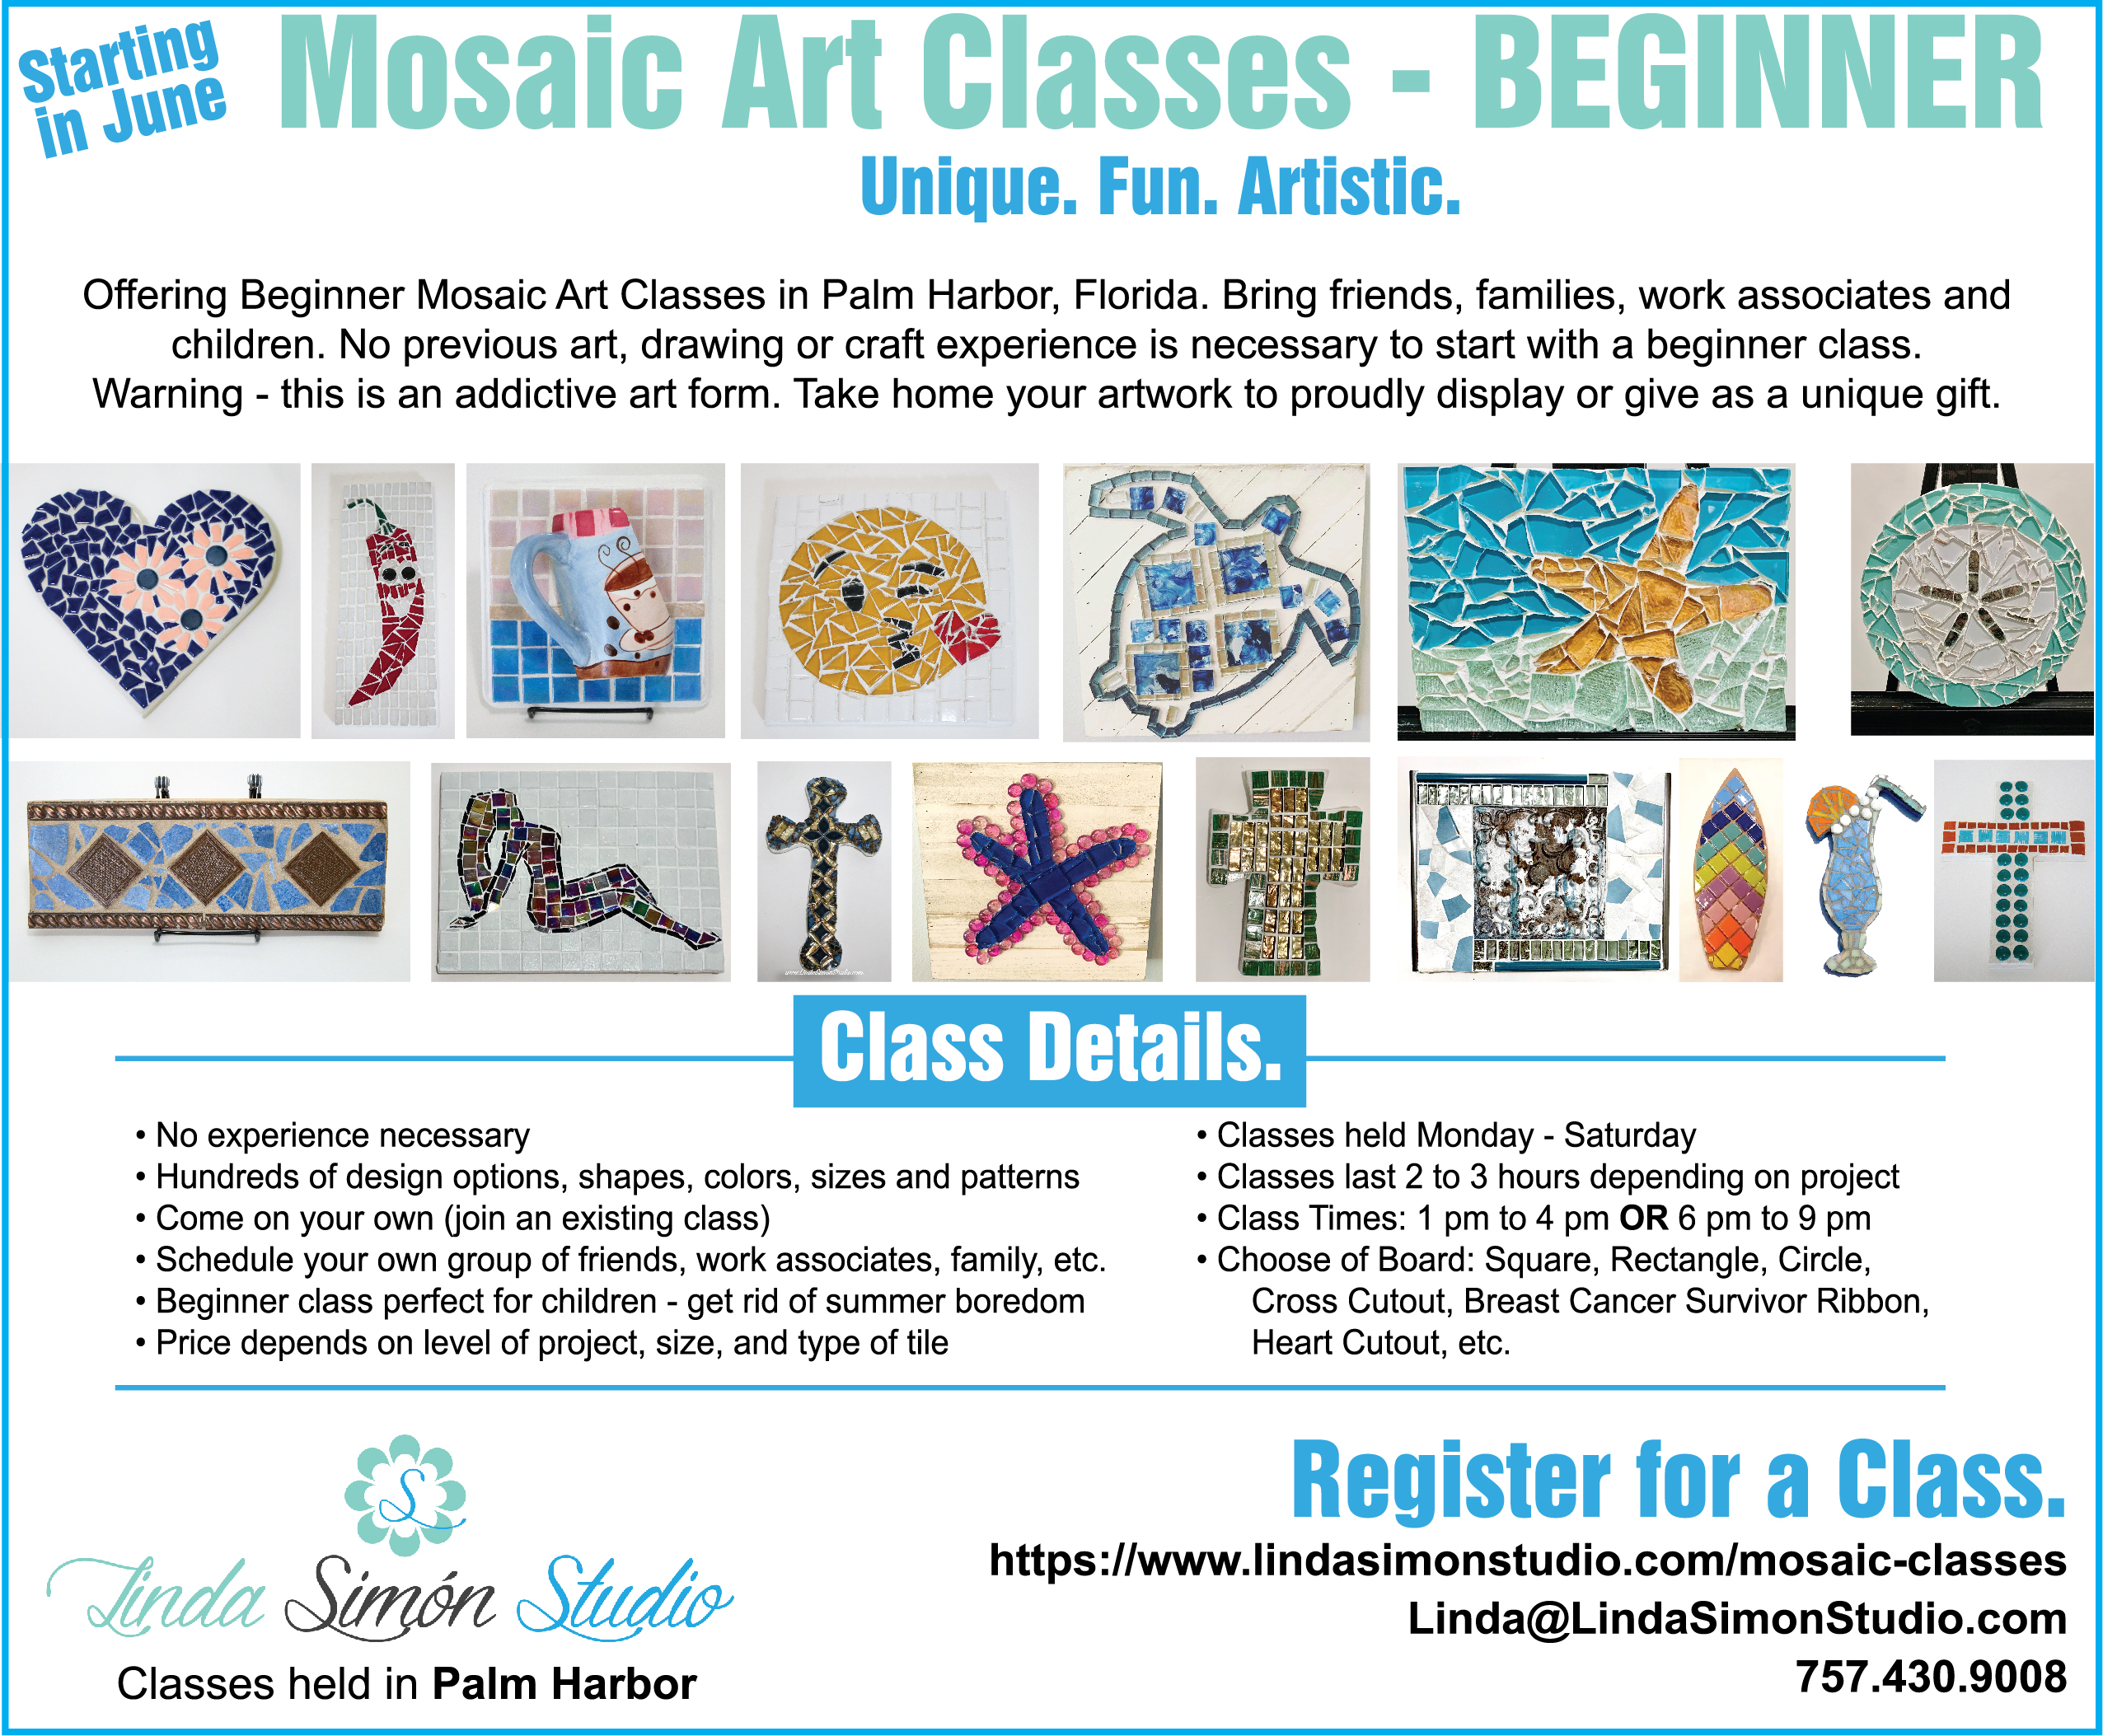 Register for a Beginner Mosaic Tile Class